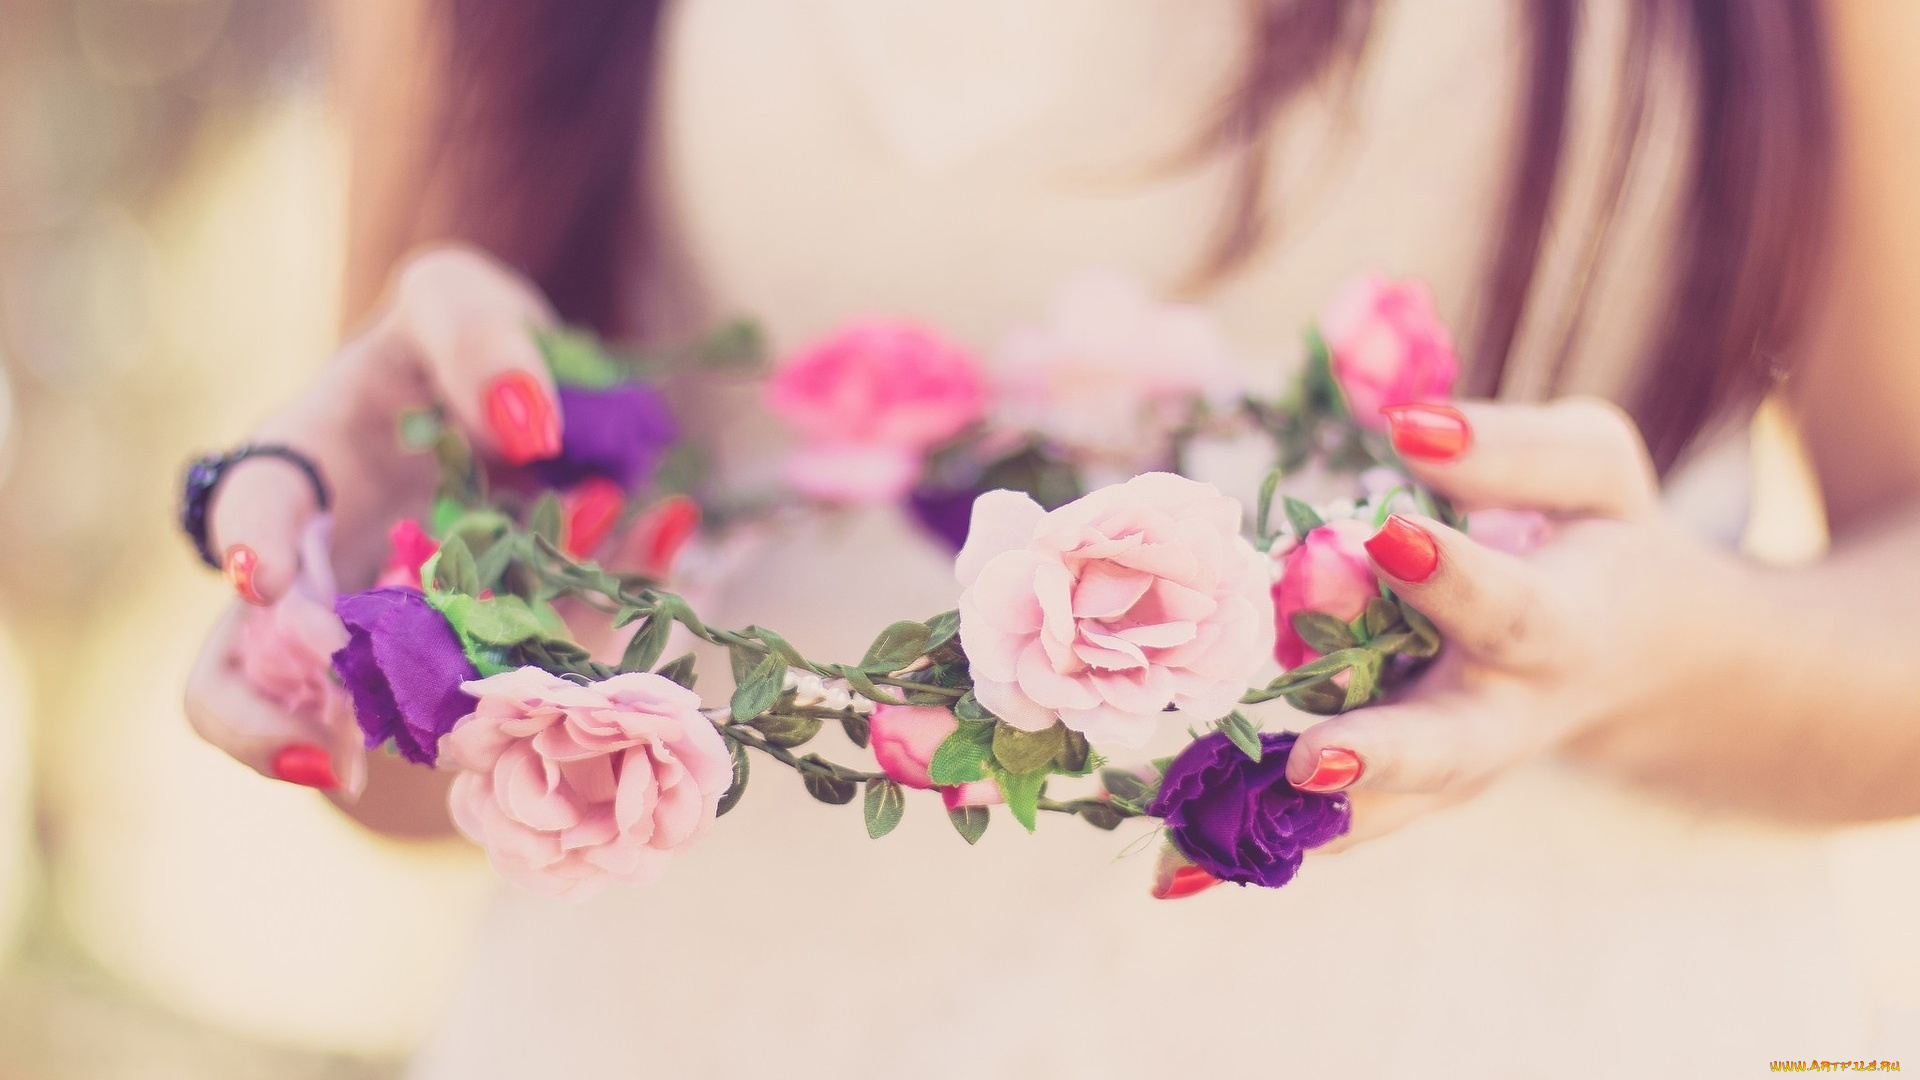 цветы, розы, wreath, bride, spring, lovely, happy, милые, венок, свадьба, весна, счастливые, невеста, wedding, flowers